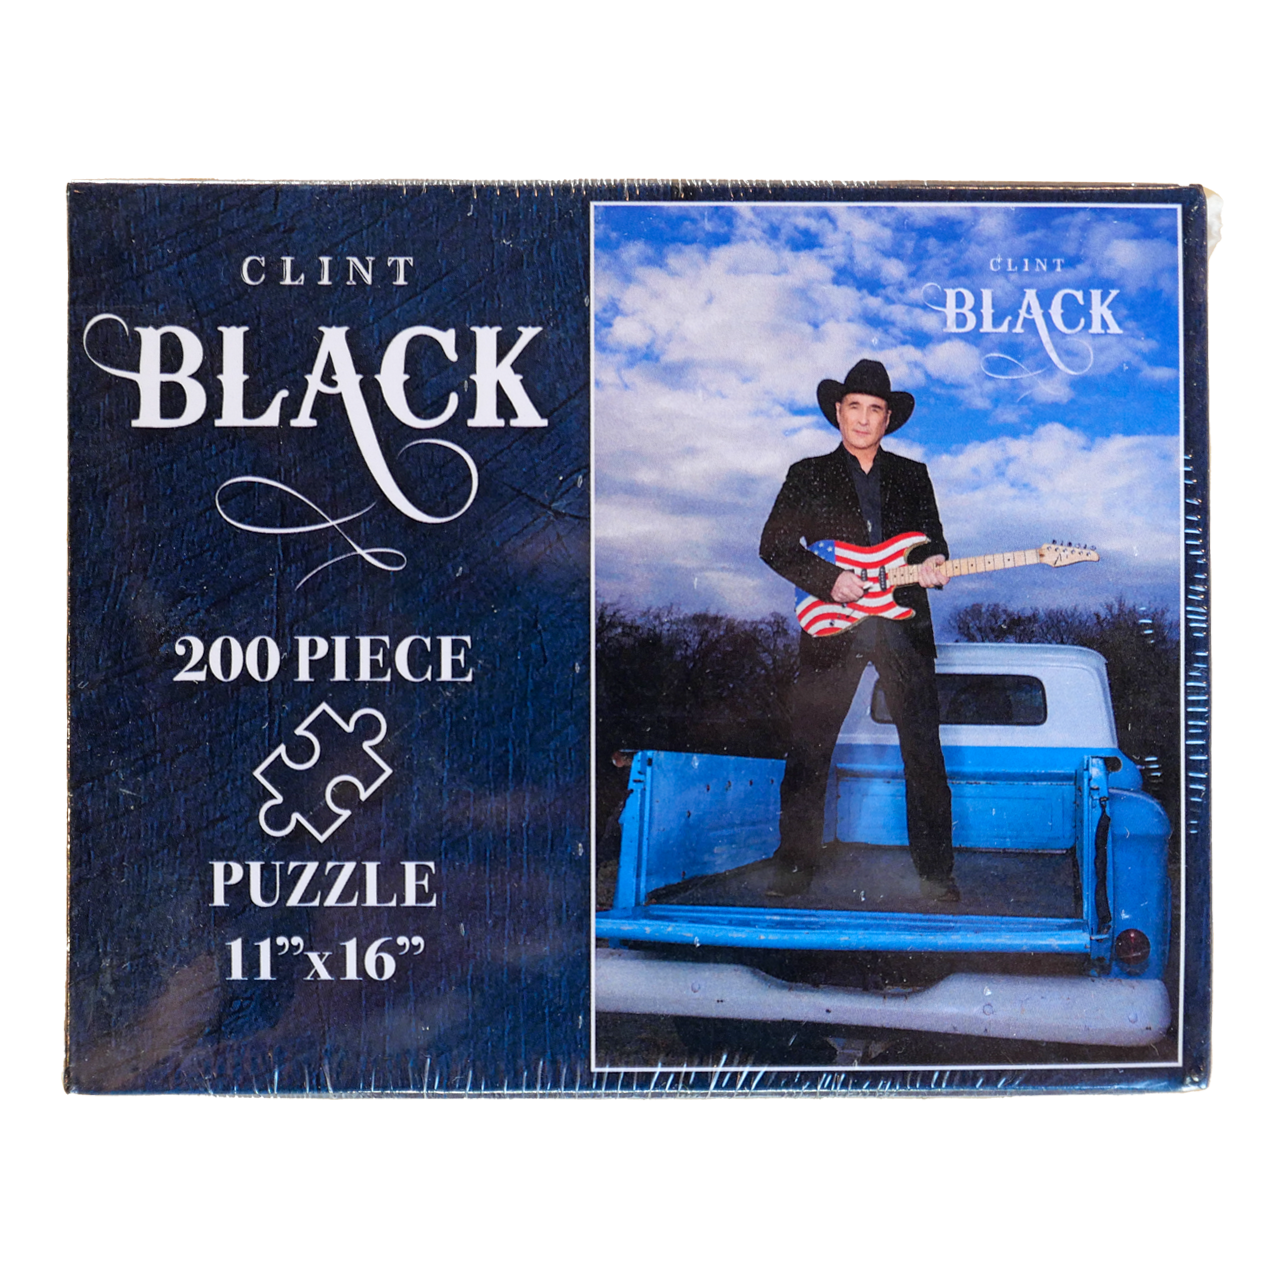 Clint Black 200 Piece Puzzle